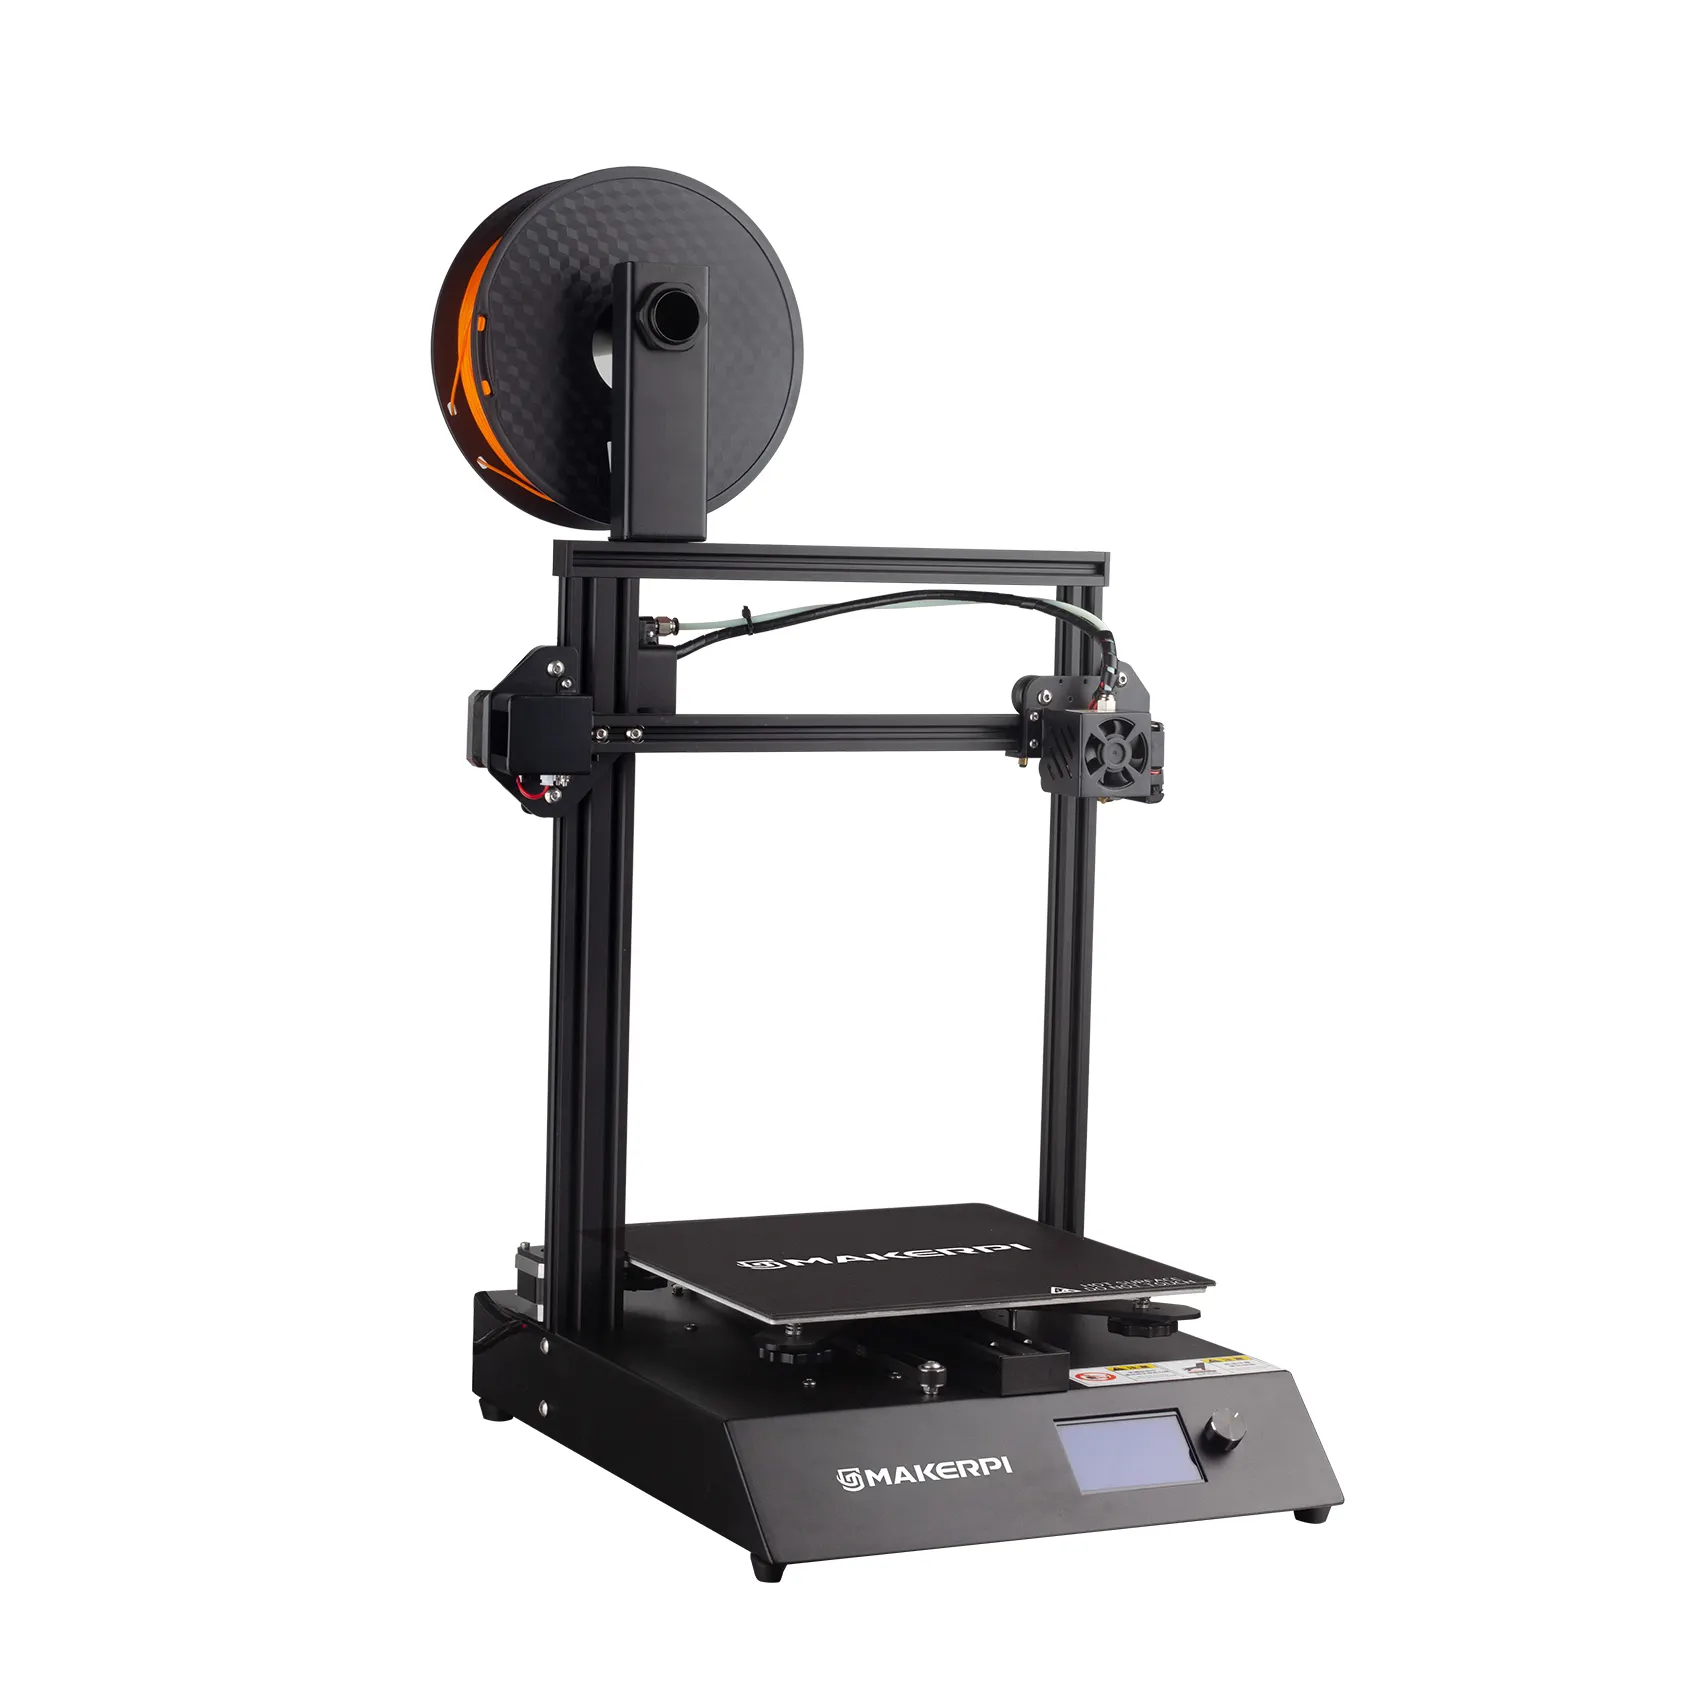 제조업체 회사 사용자 정의 MakerPi P2 인쇄 3d 인쇄기 온라인 3d 프린터 장치